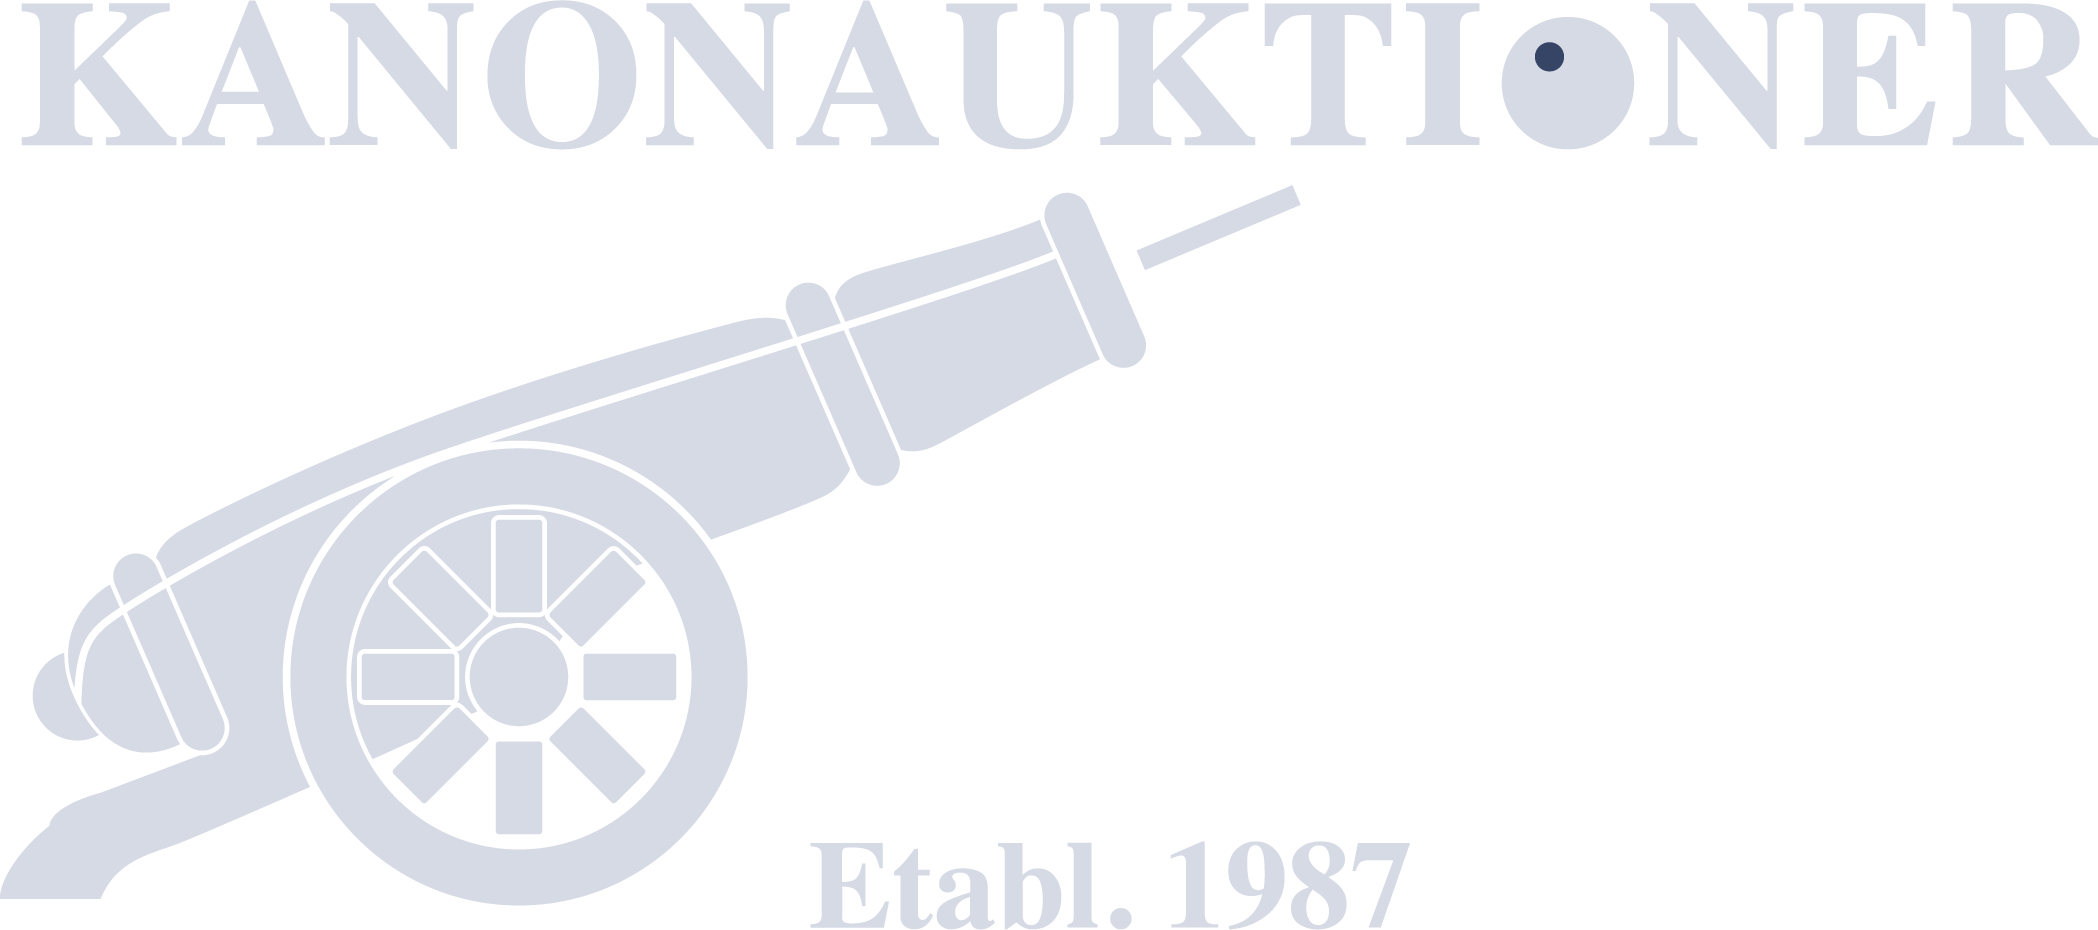 Kanonauktioner logo